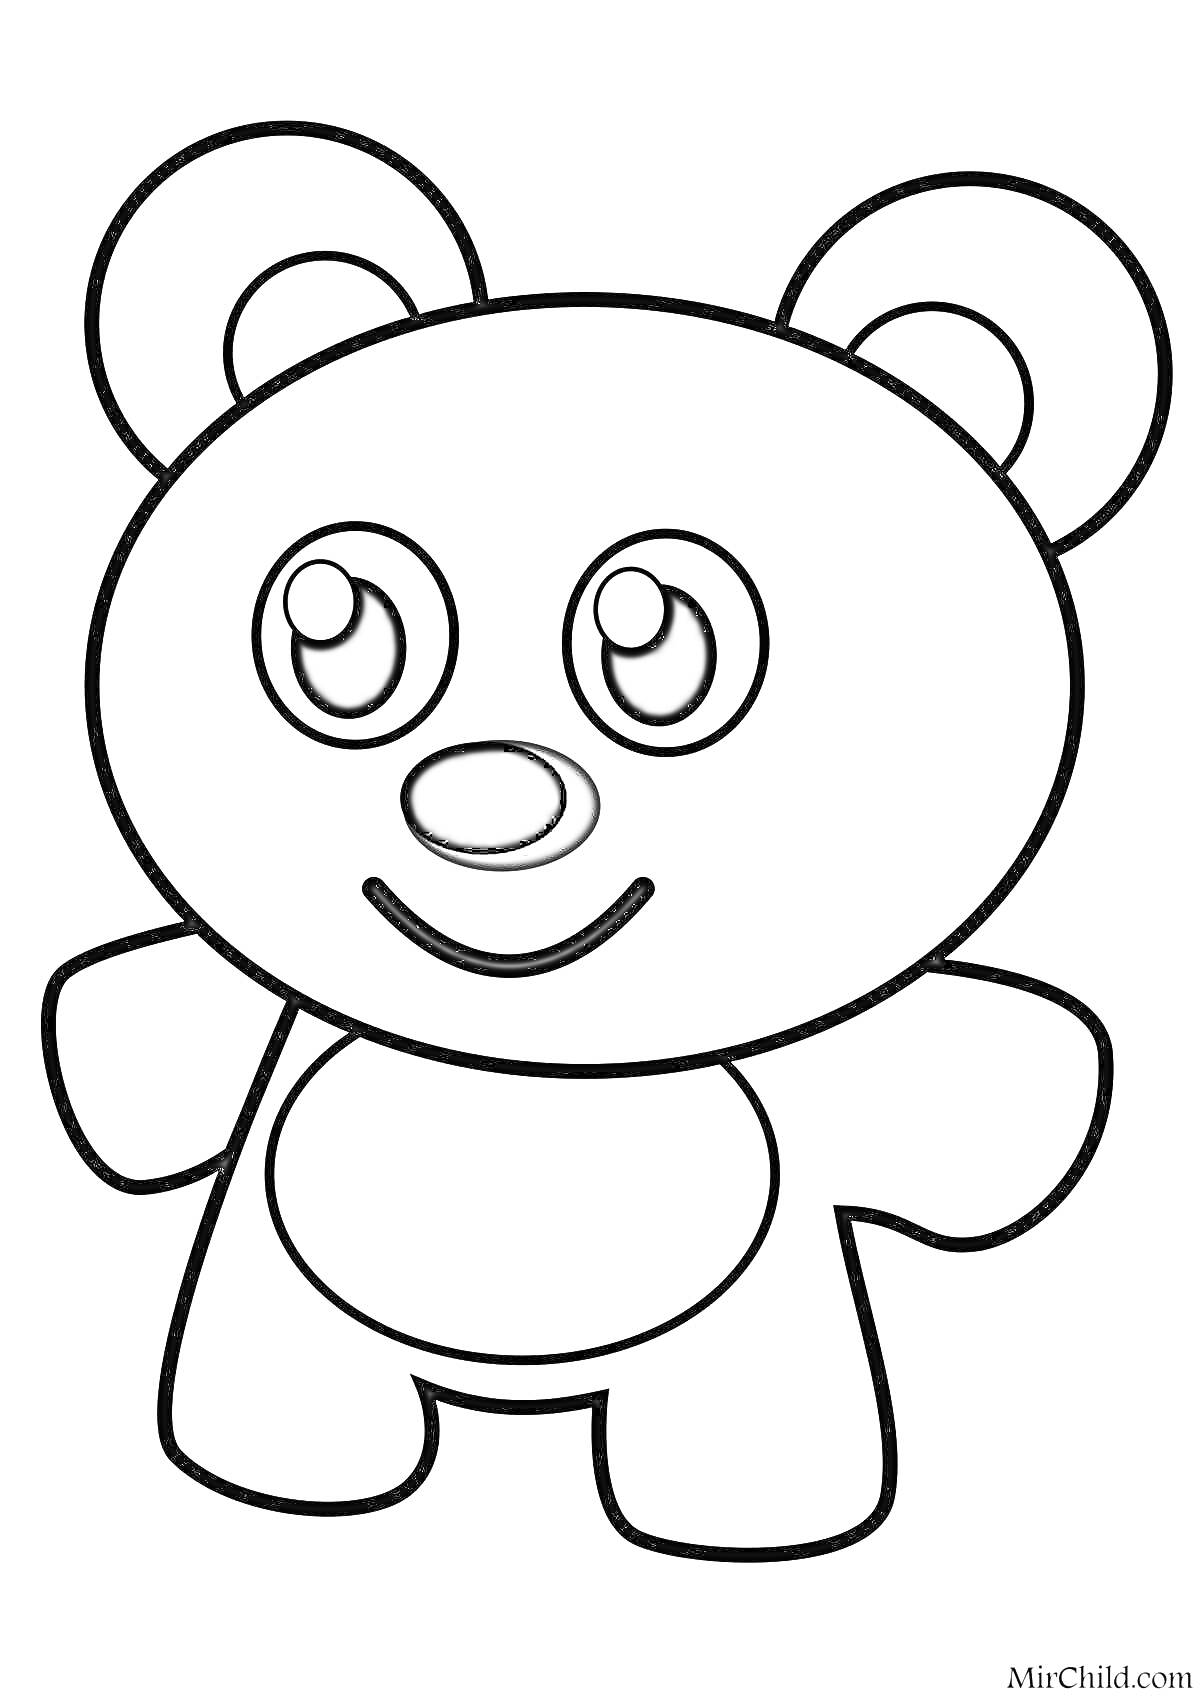 Раскраска Счастливый медвежонок с большими глазами